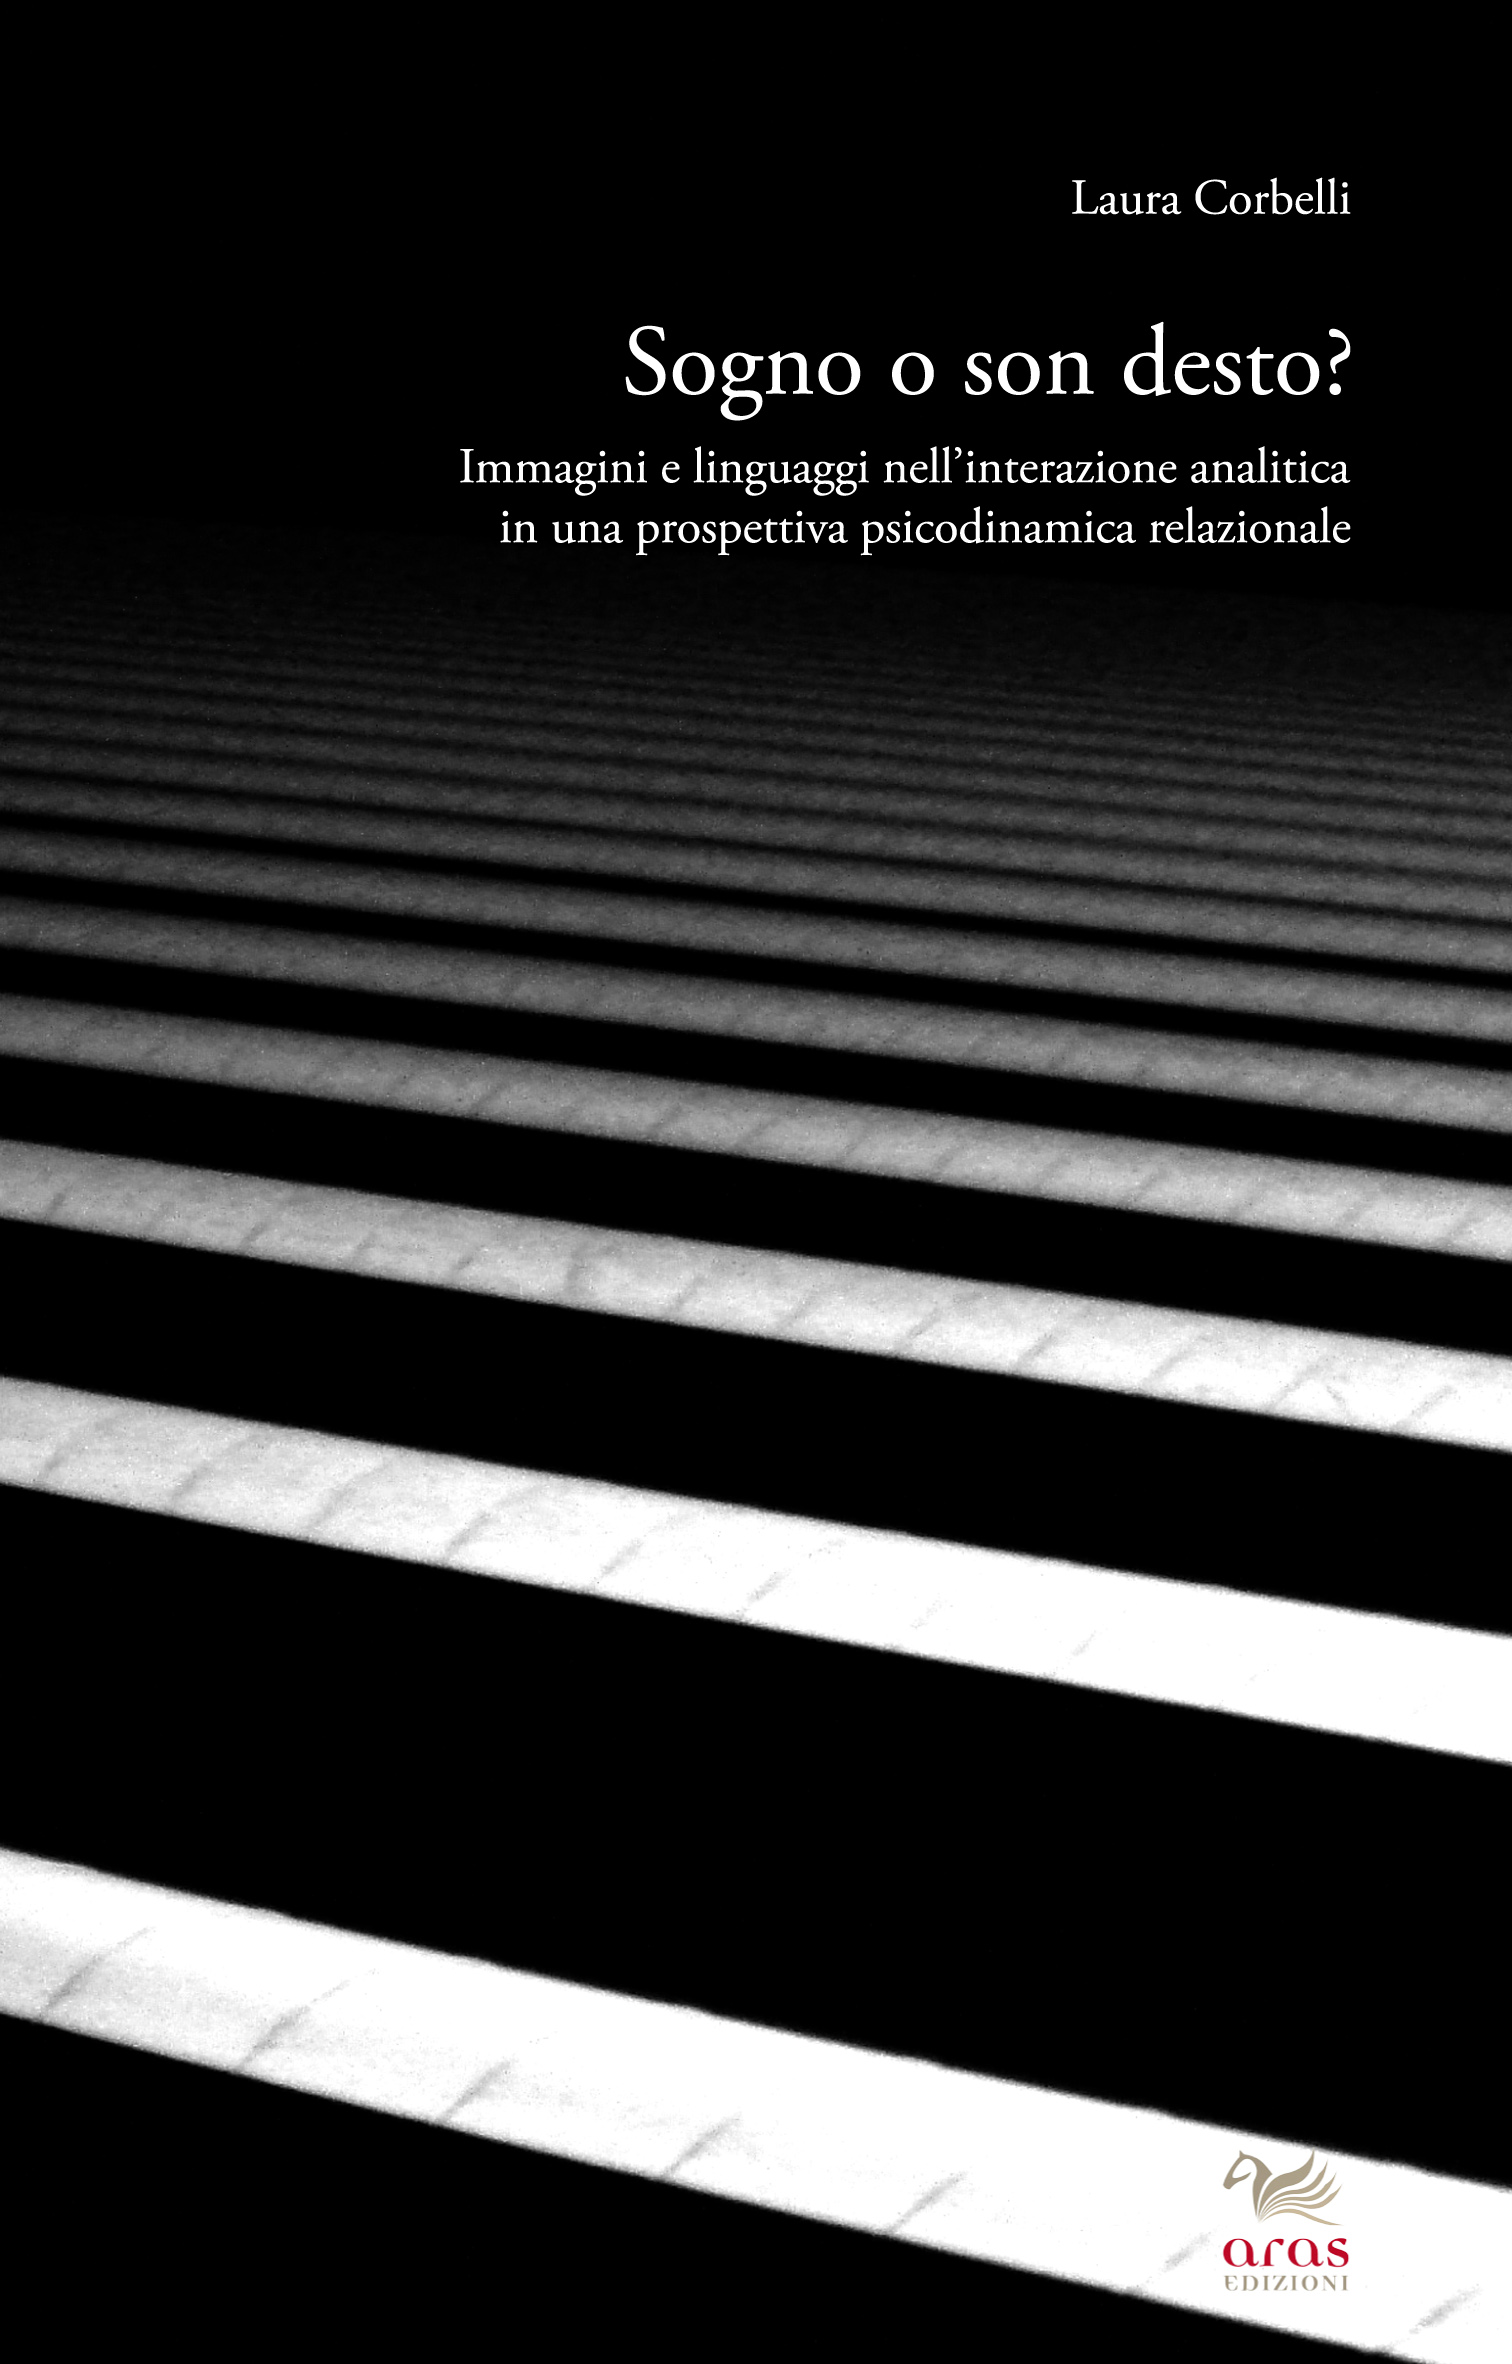 E-book, Sogno o son desto? : immagini e linguaggi nell'interazione analitica in una prospettiva psicodinamica relazionale, Corbelli, Laura, Aras